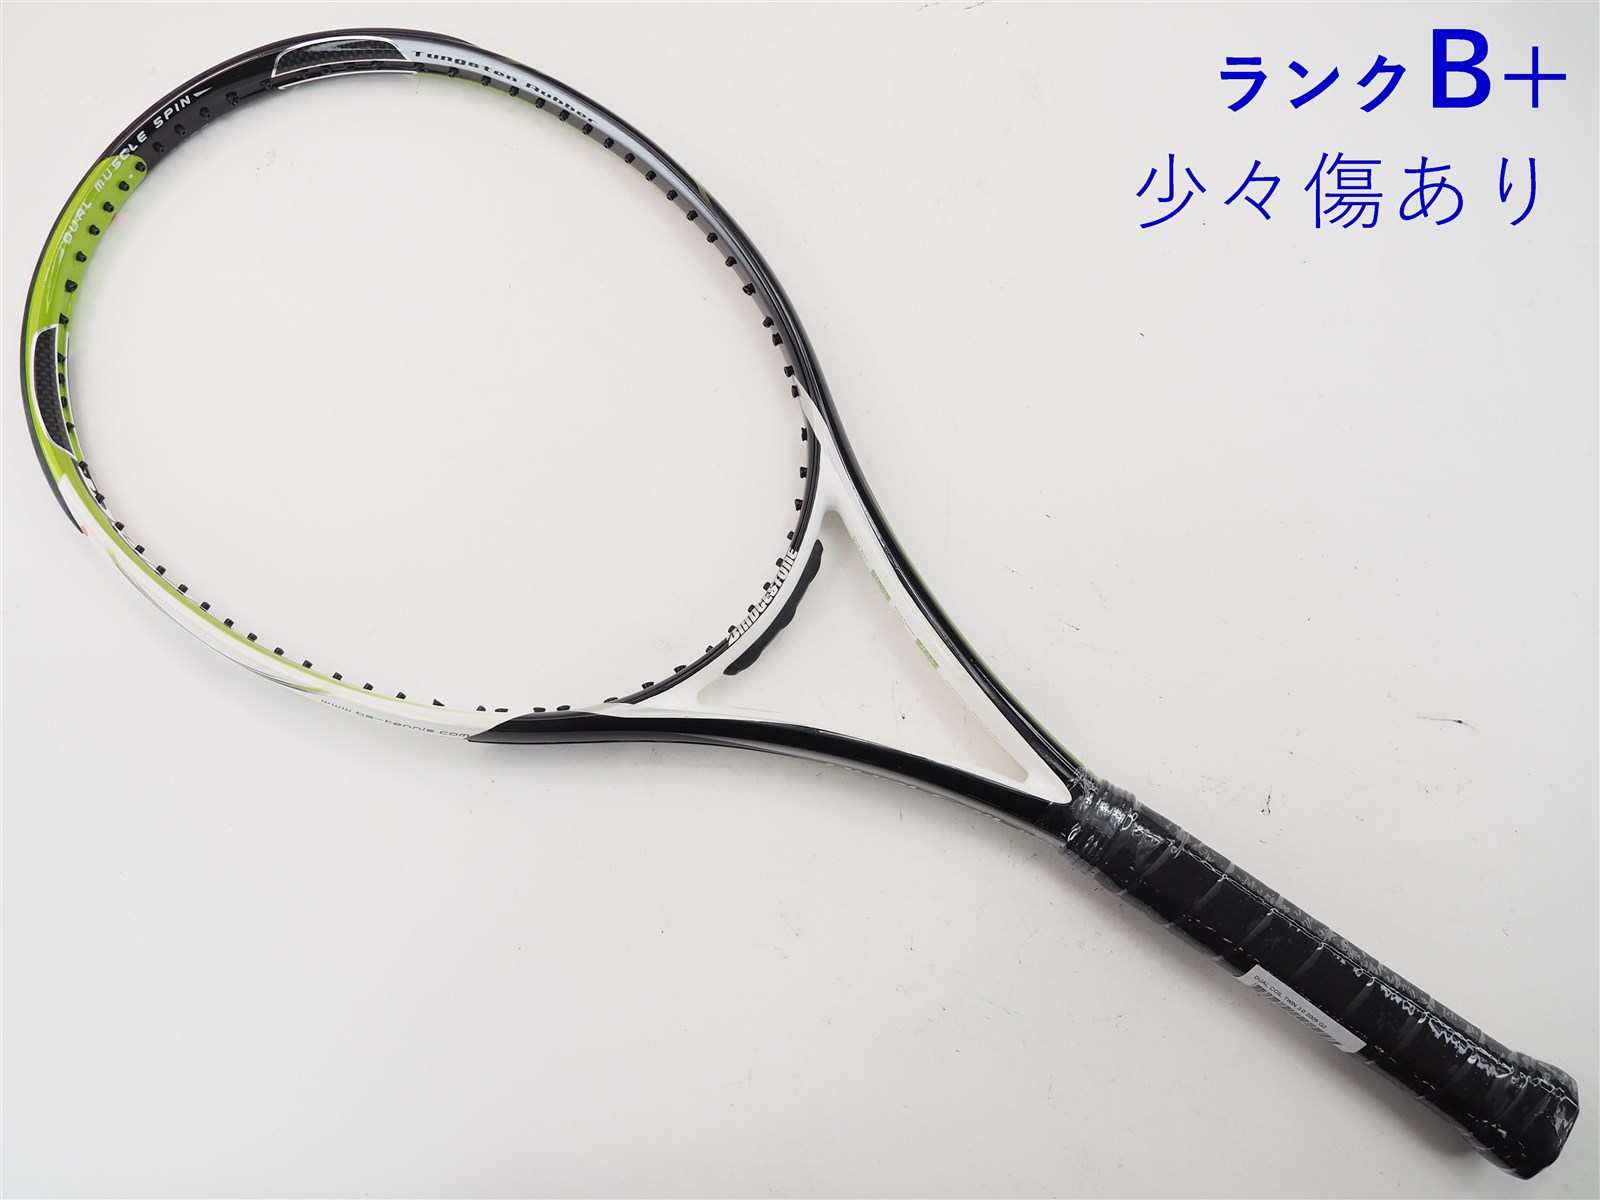 テニスラケット ブリヂストン デュアルコイル ツイン3.0 2009年モデル